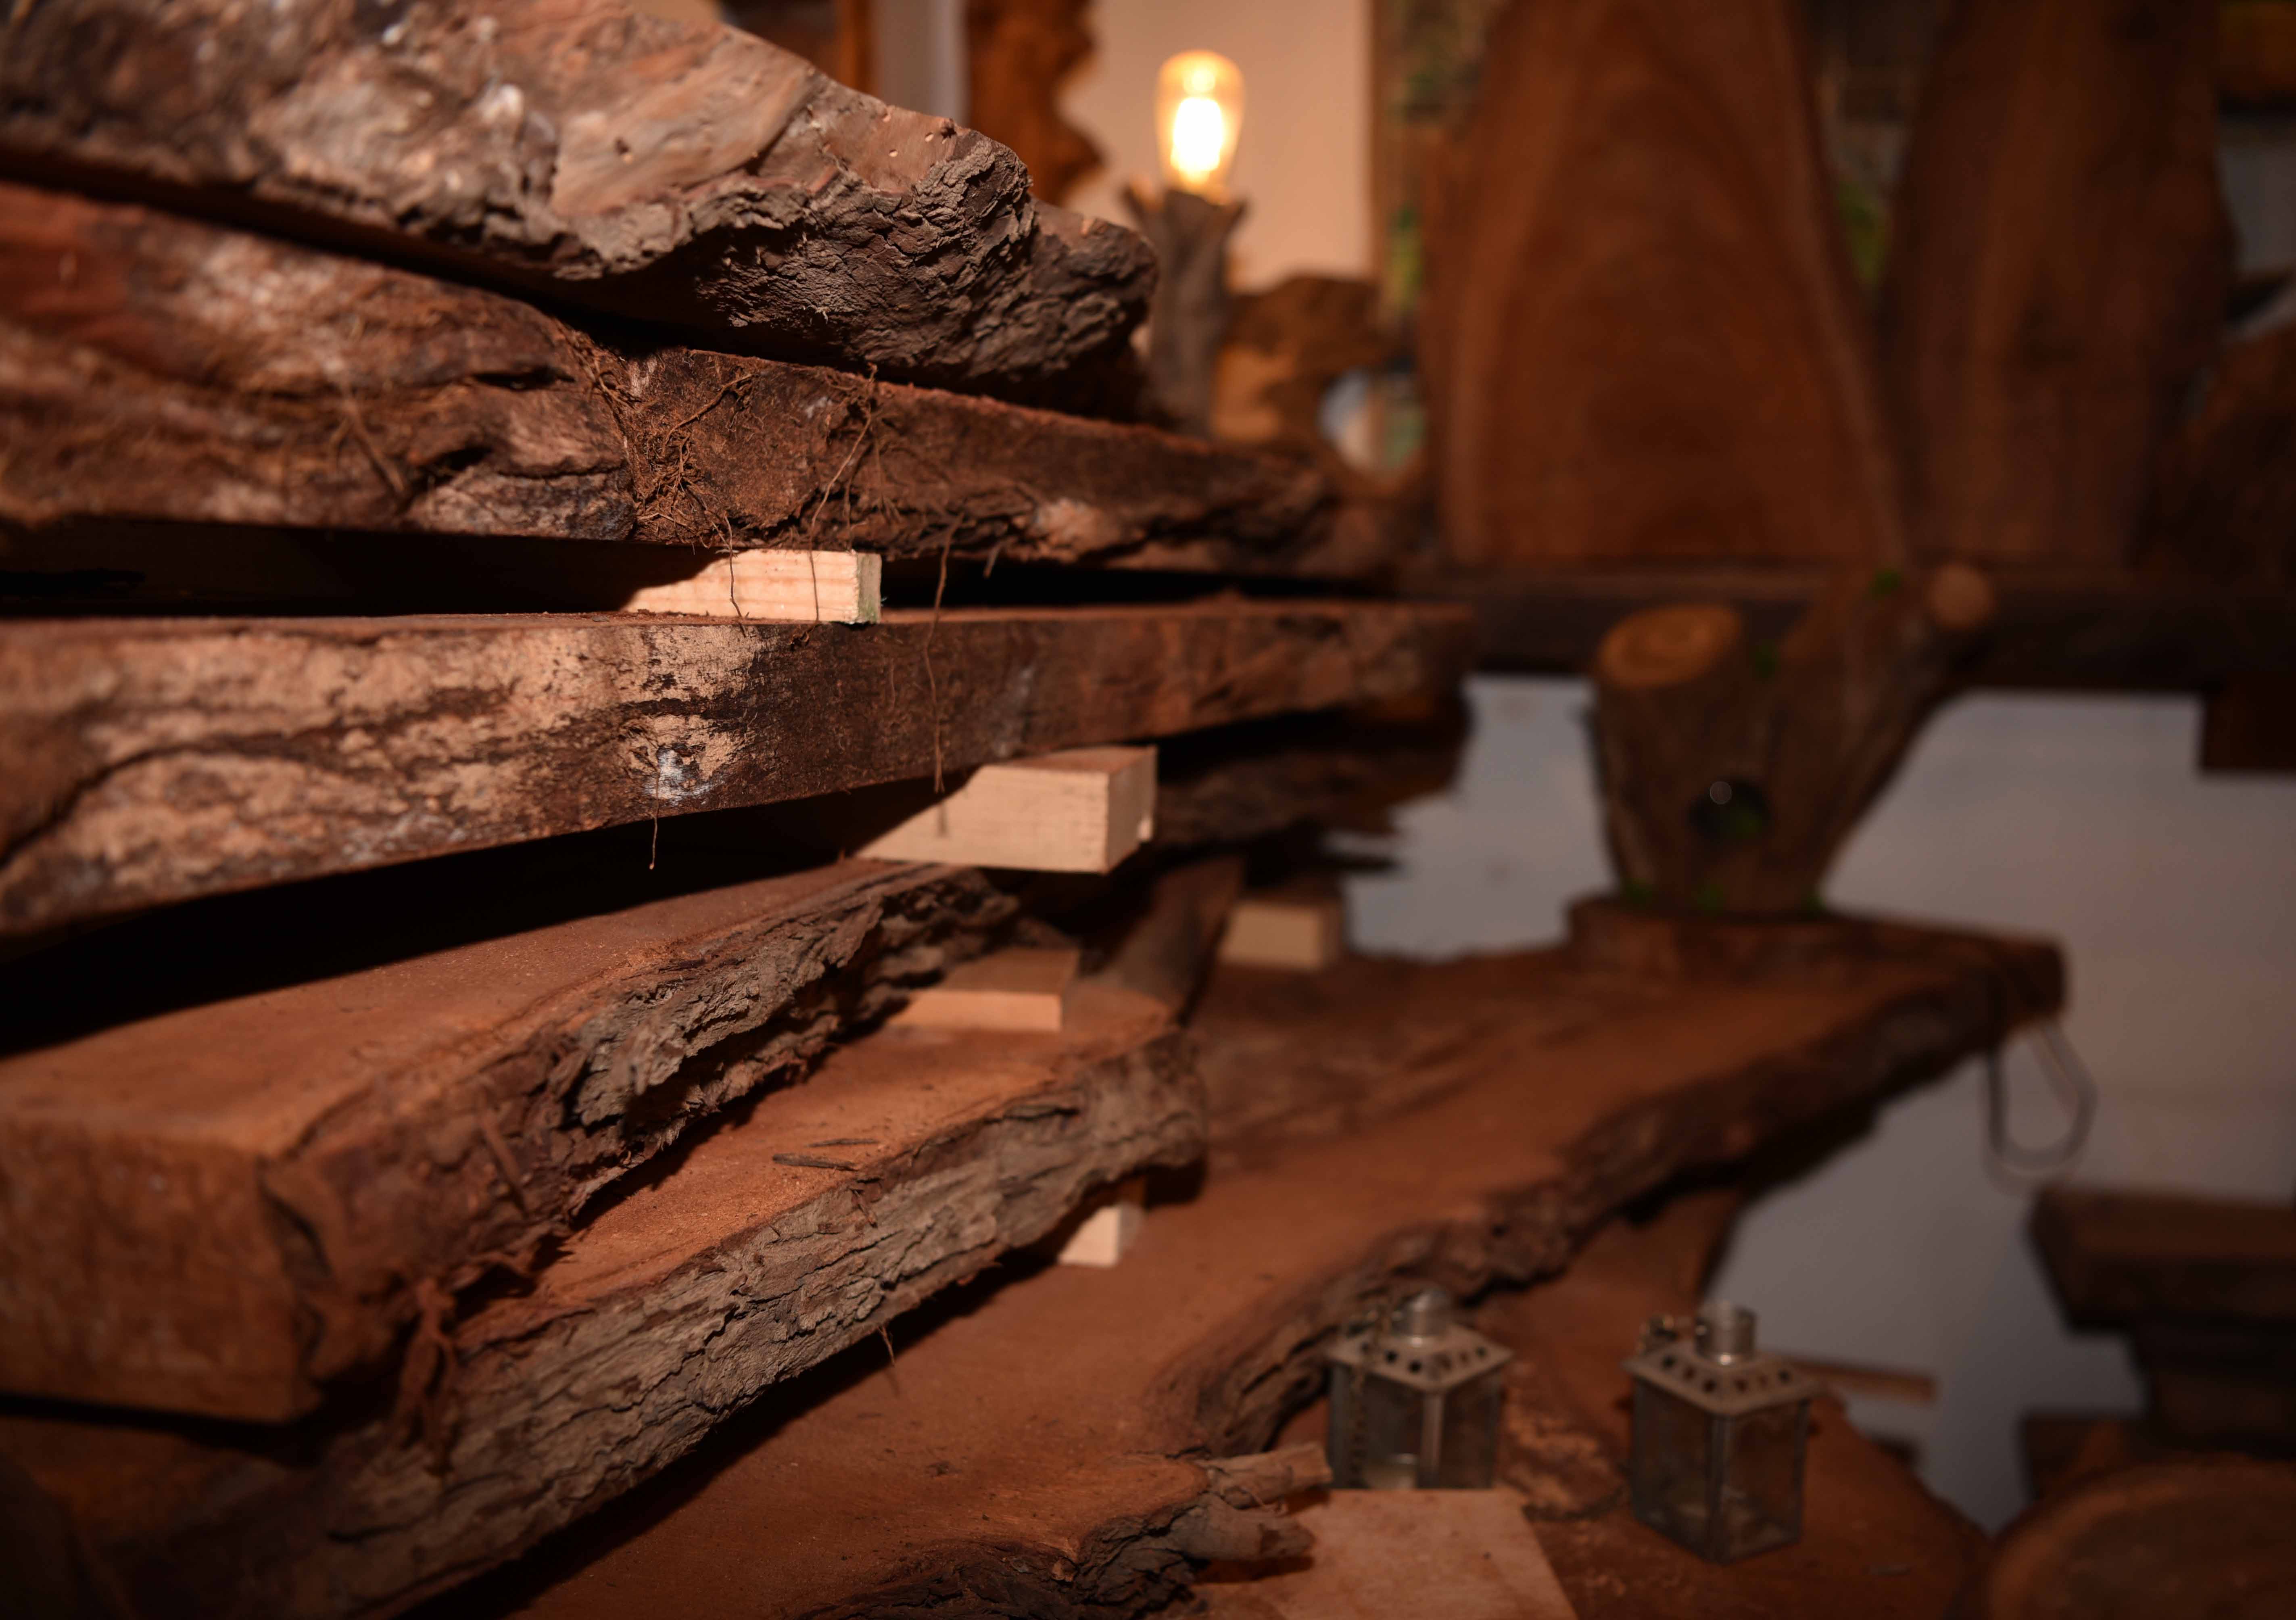 Des plaques de bois locaux, de saule et de cèdre, qui seront transformées en objets d'art